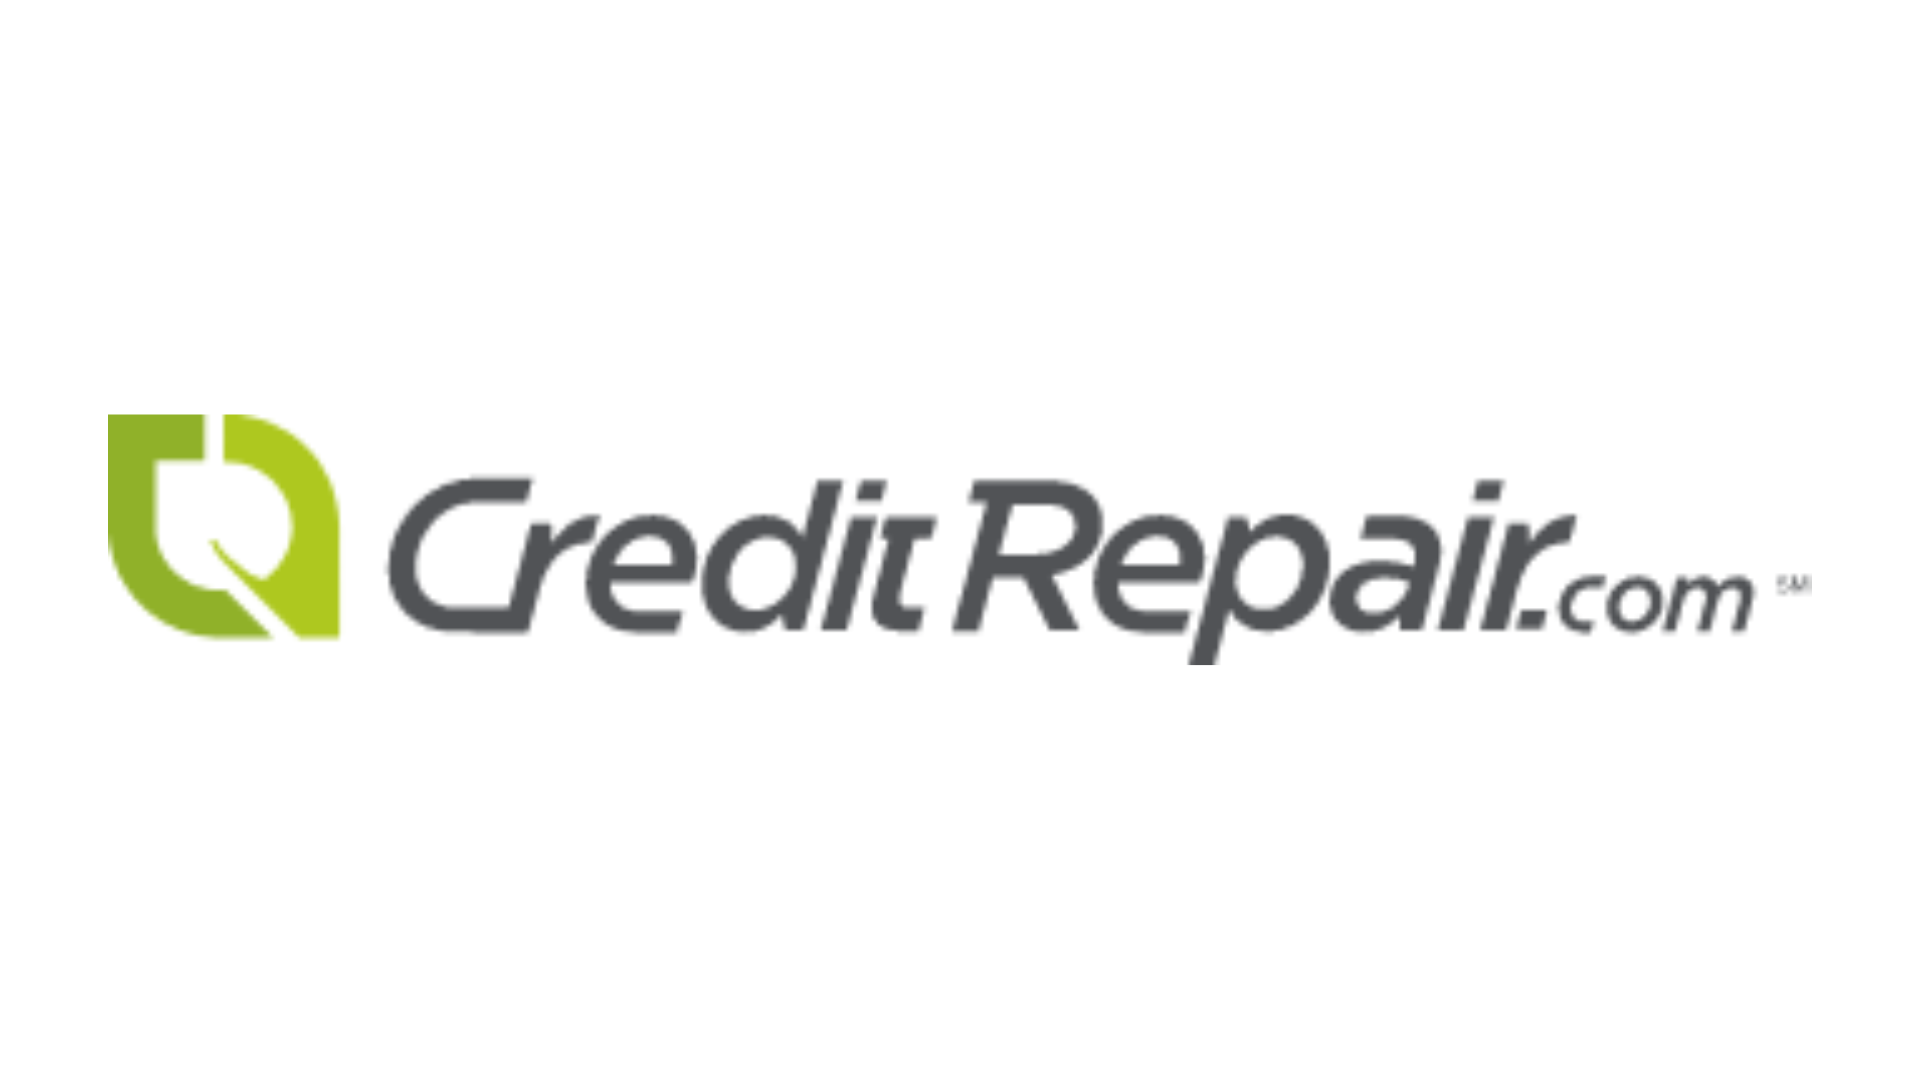 Credit Repair New York